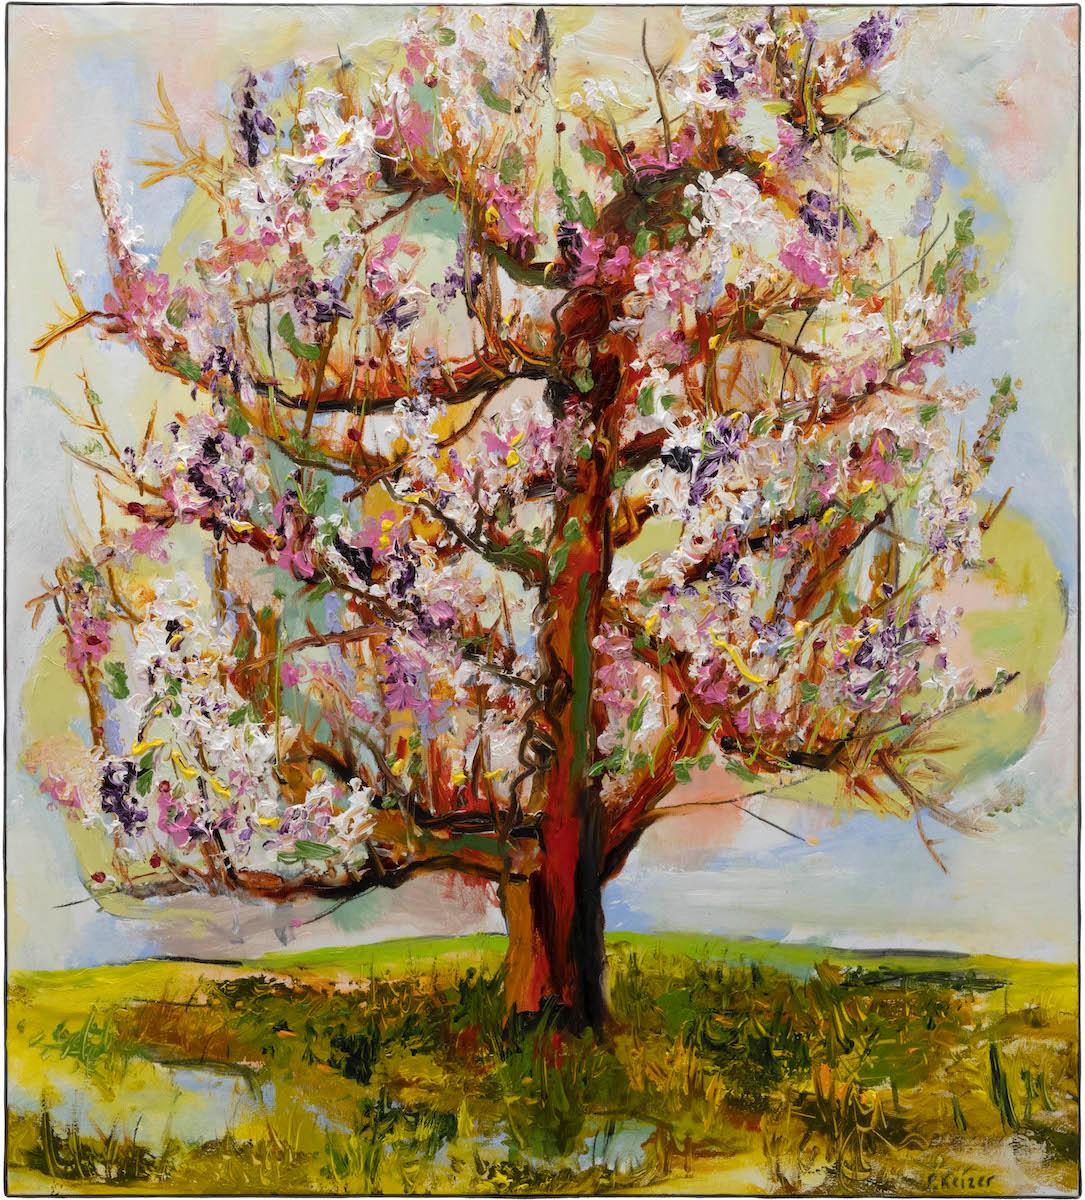 "Let me stay", peinture à l'huile d'un arbre par Peter Keizer.

Peter Keizer est un peintre et sculpteur néerlandais, né en 1961. Il a étudié à la Rijksakademie d'Amsterdam et a commencé à travailler en tant qu'artiste professionnel après avoir